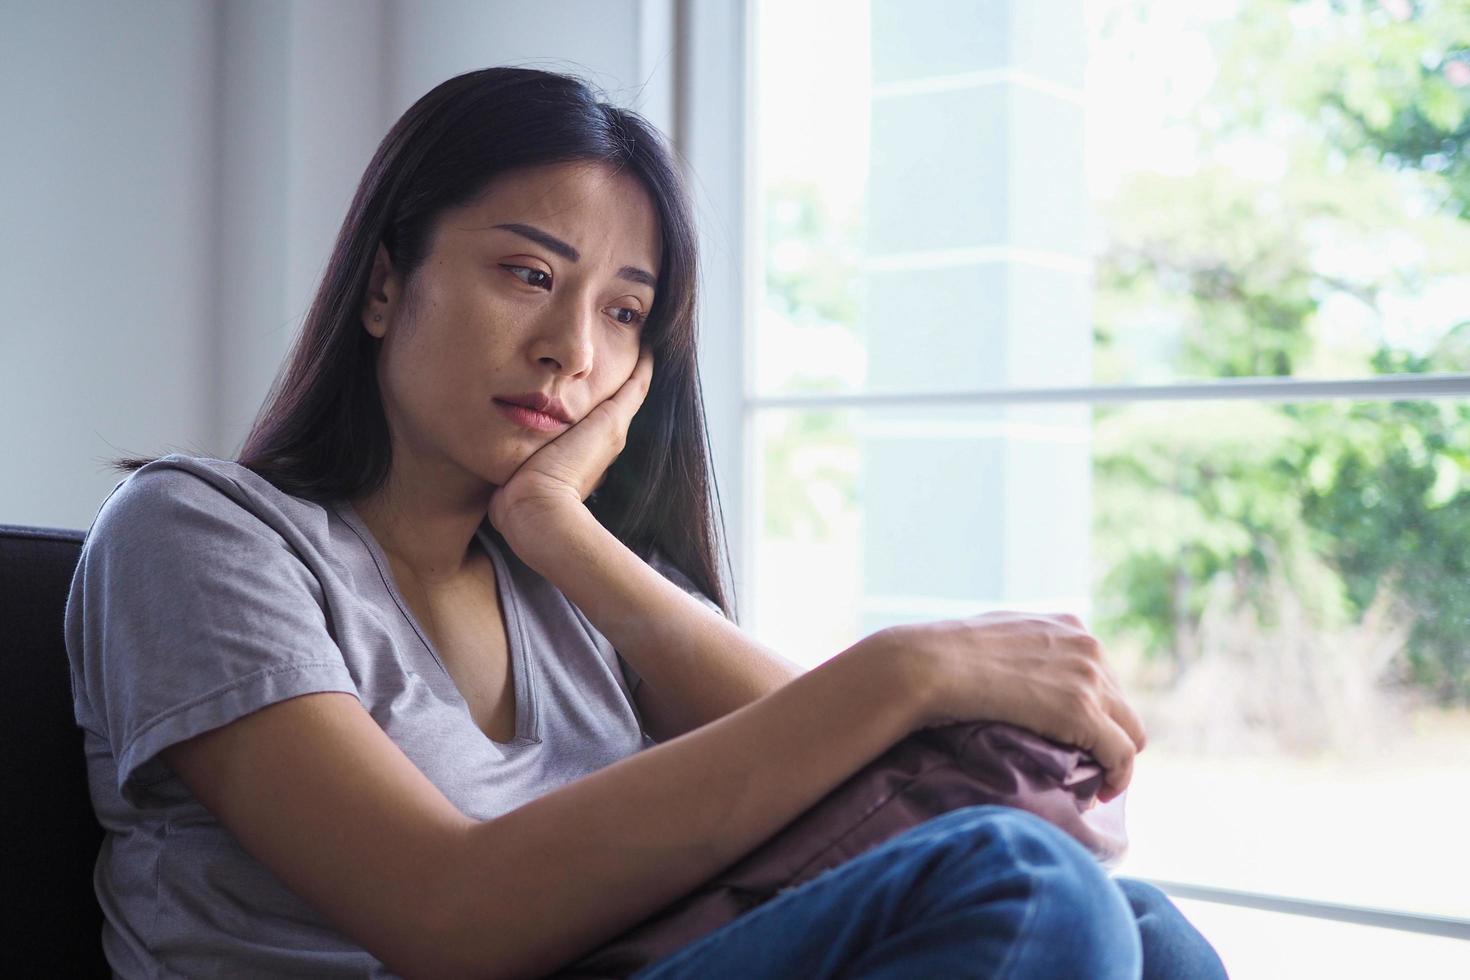 femmes asiatiques souffrant de maladie mentale, d'anxiété, d'hallucinations, de chutes mentales photo